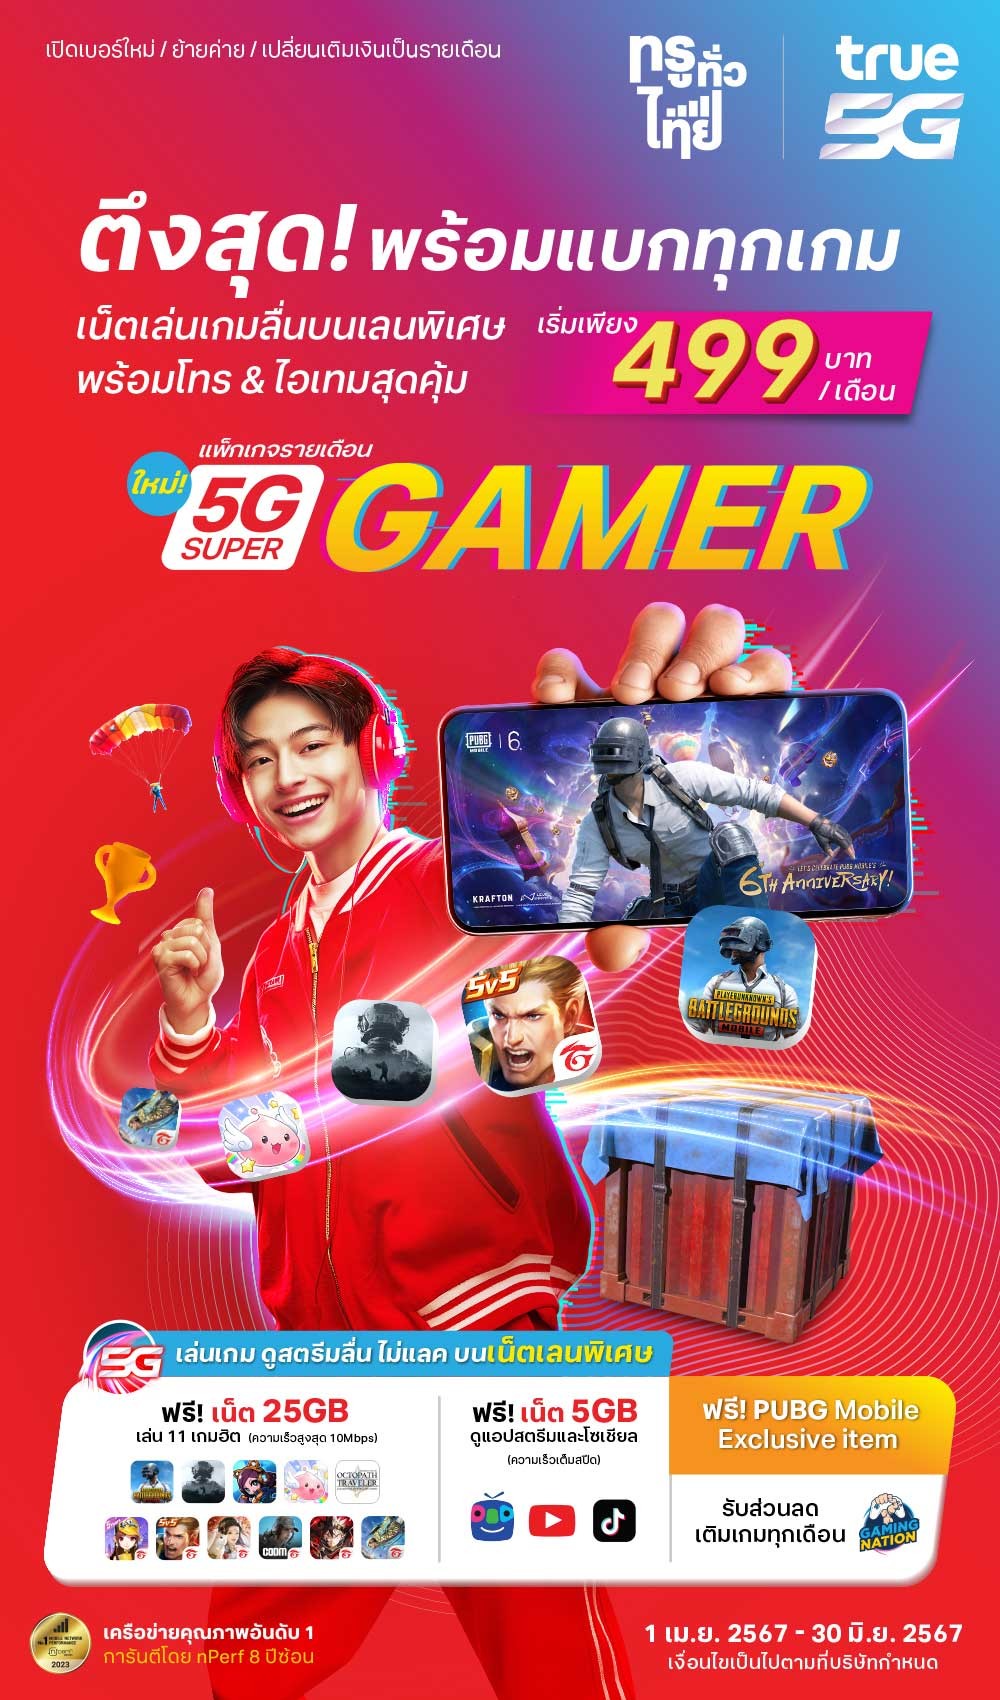 5g-super-gamer-_kv-1000x%E0%B9%84%E0%B8%